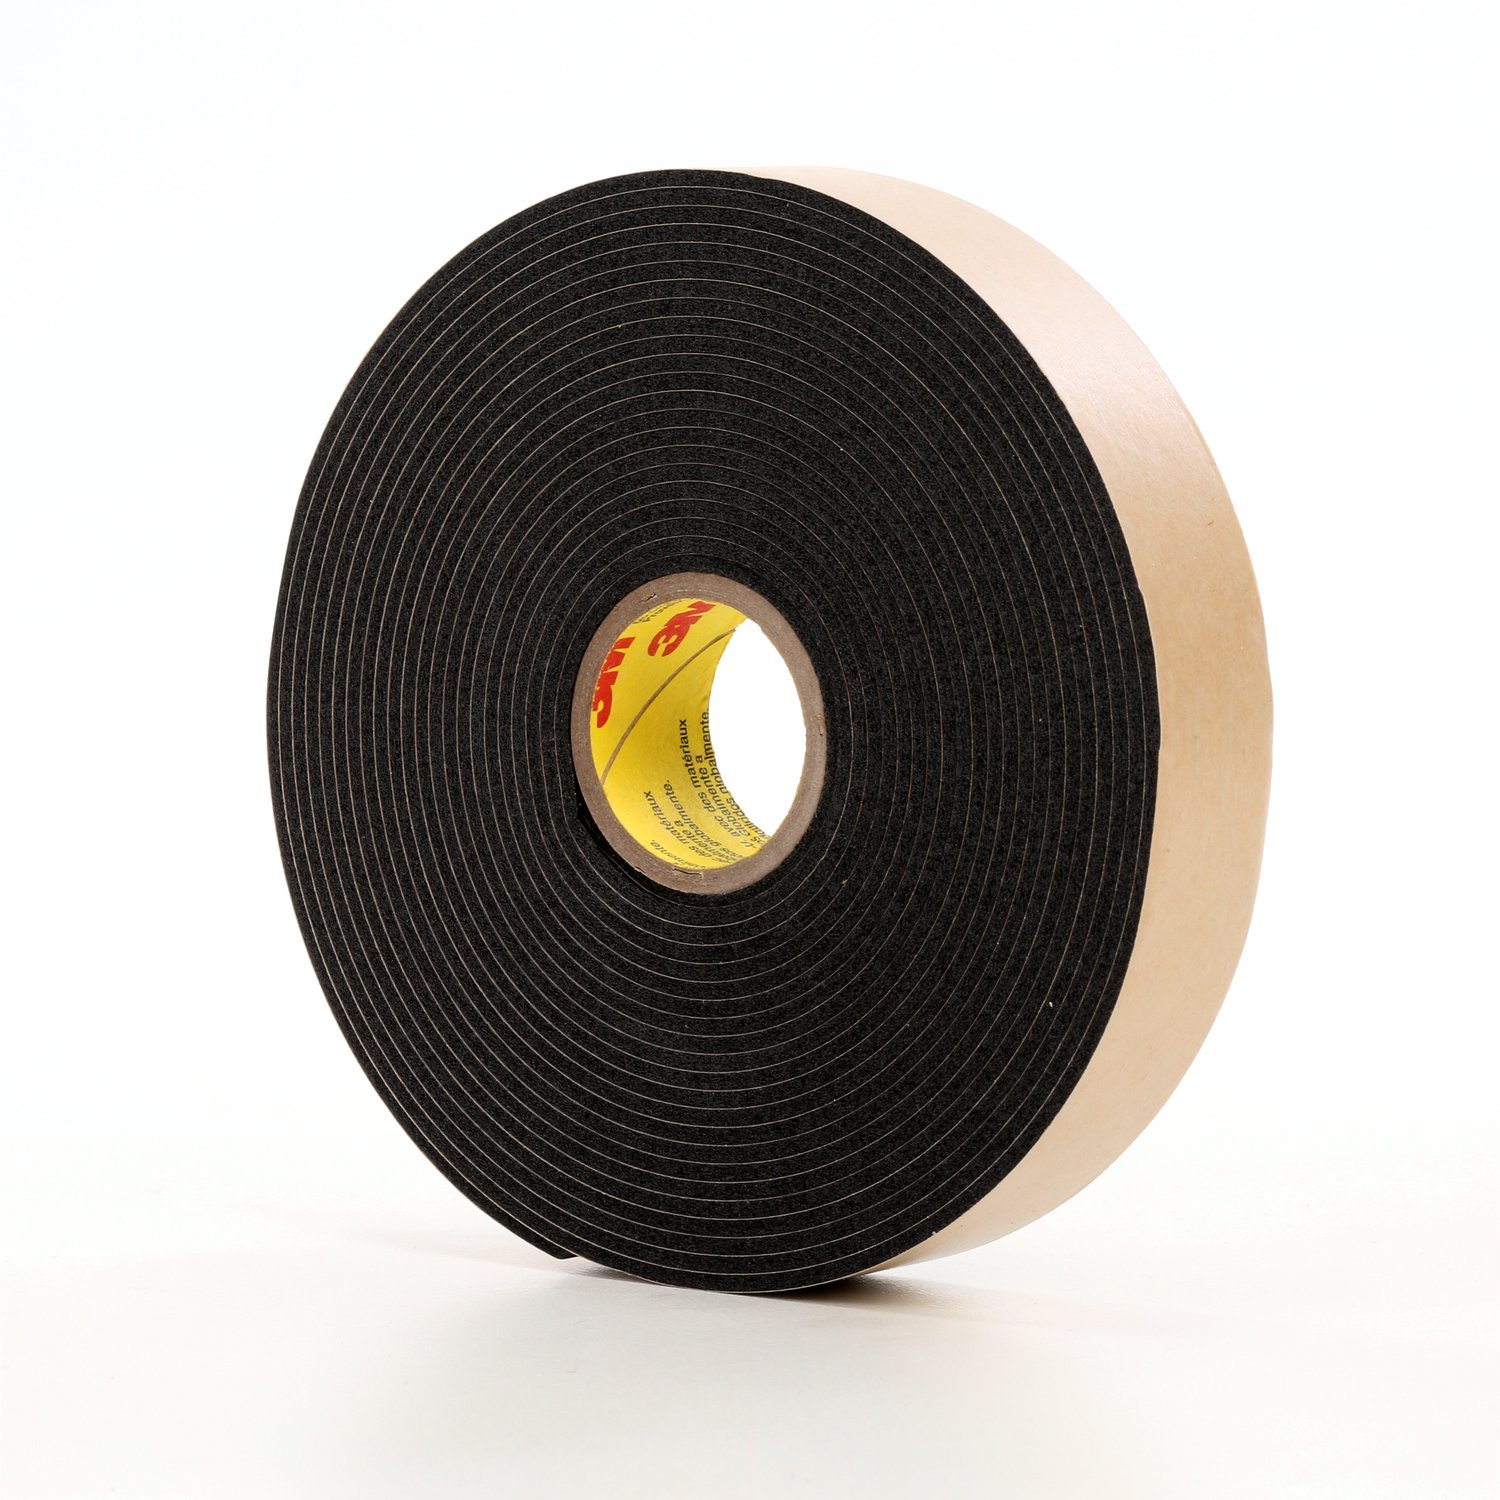 7000124261 - 3M Double Coated Polyethylene Foam Tape 4496B, Black, 2 in x 36 yd, 62
mil, 6 rolls per case